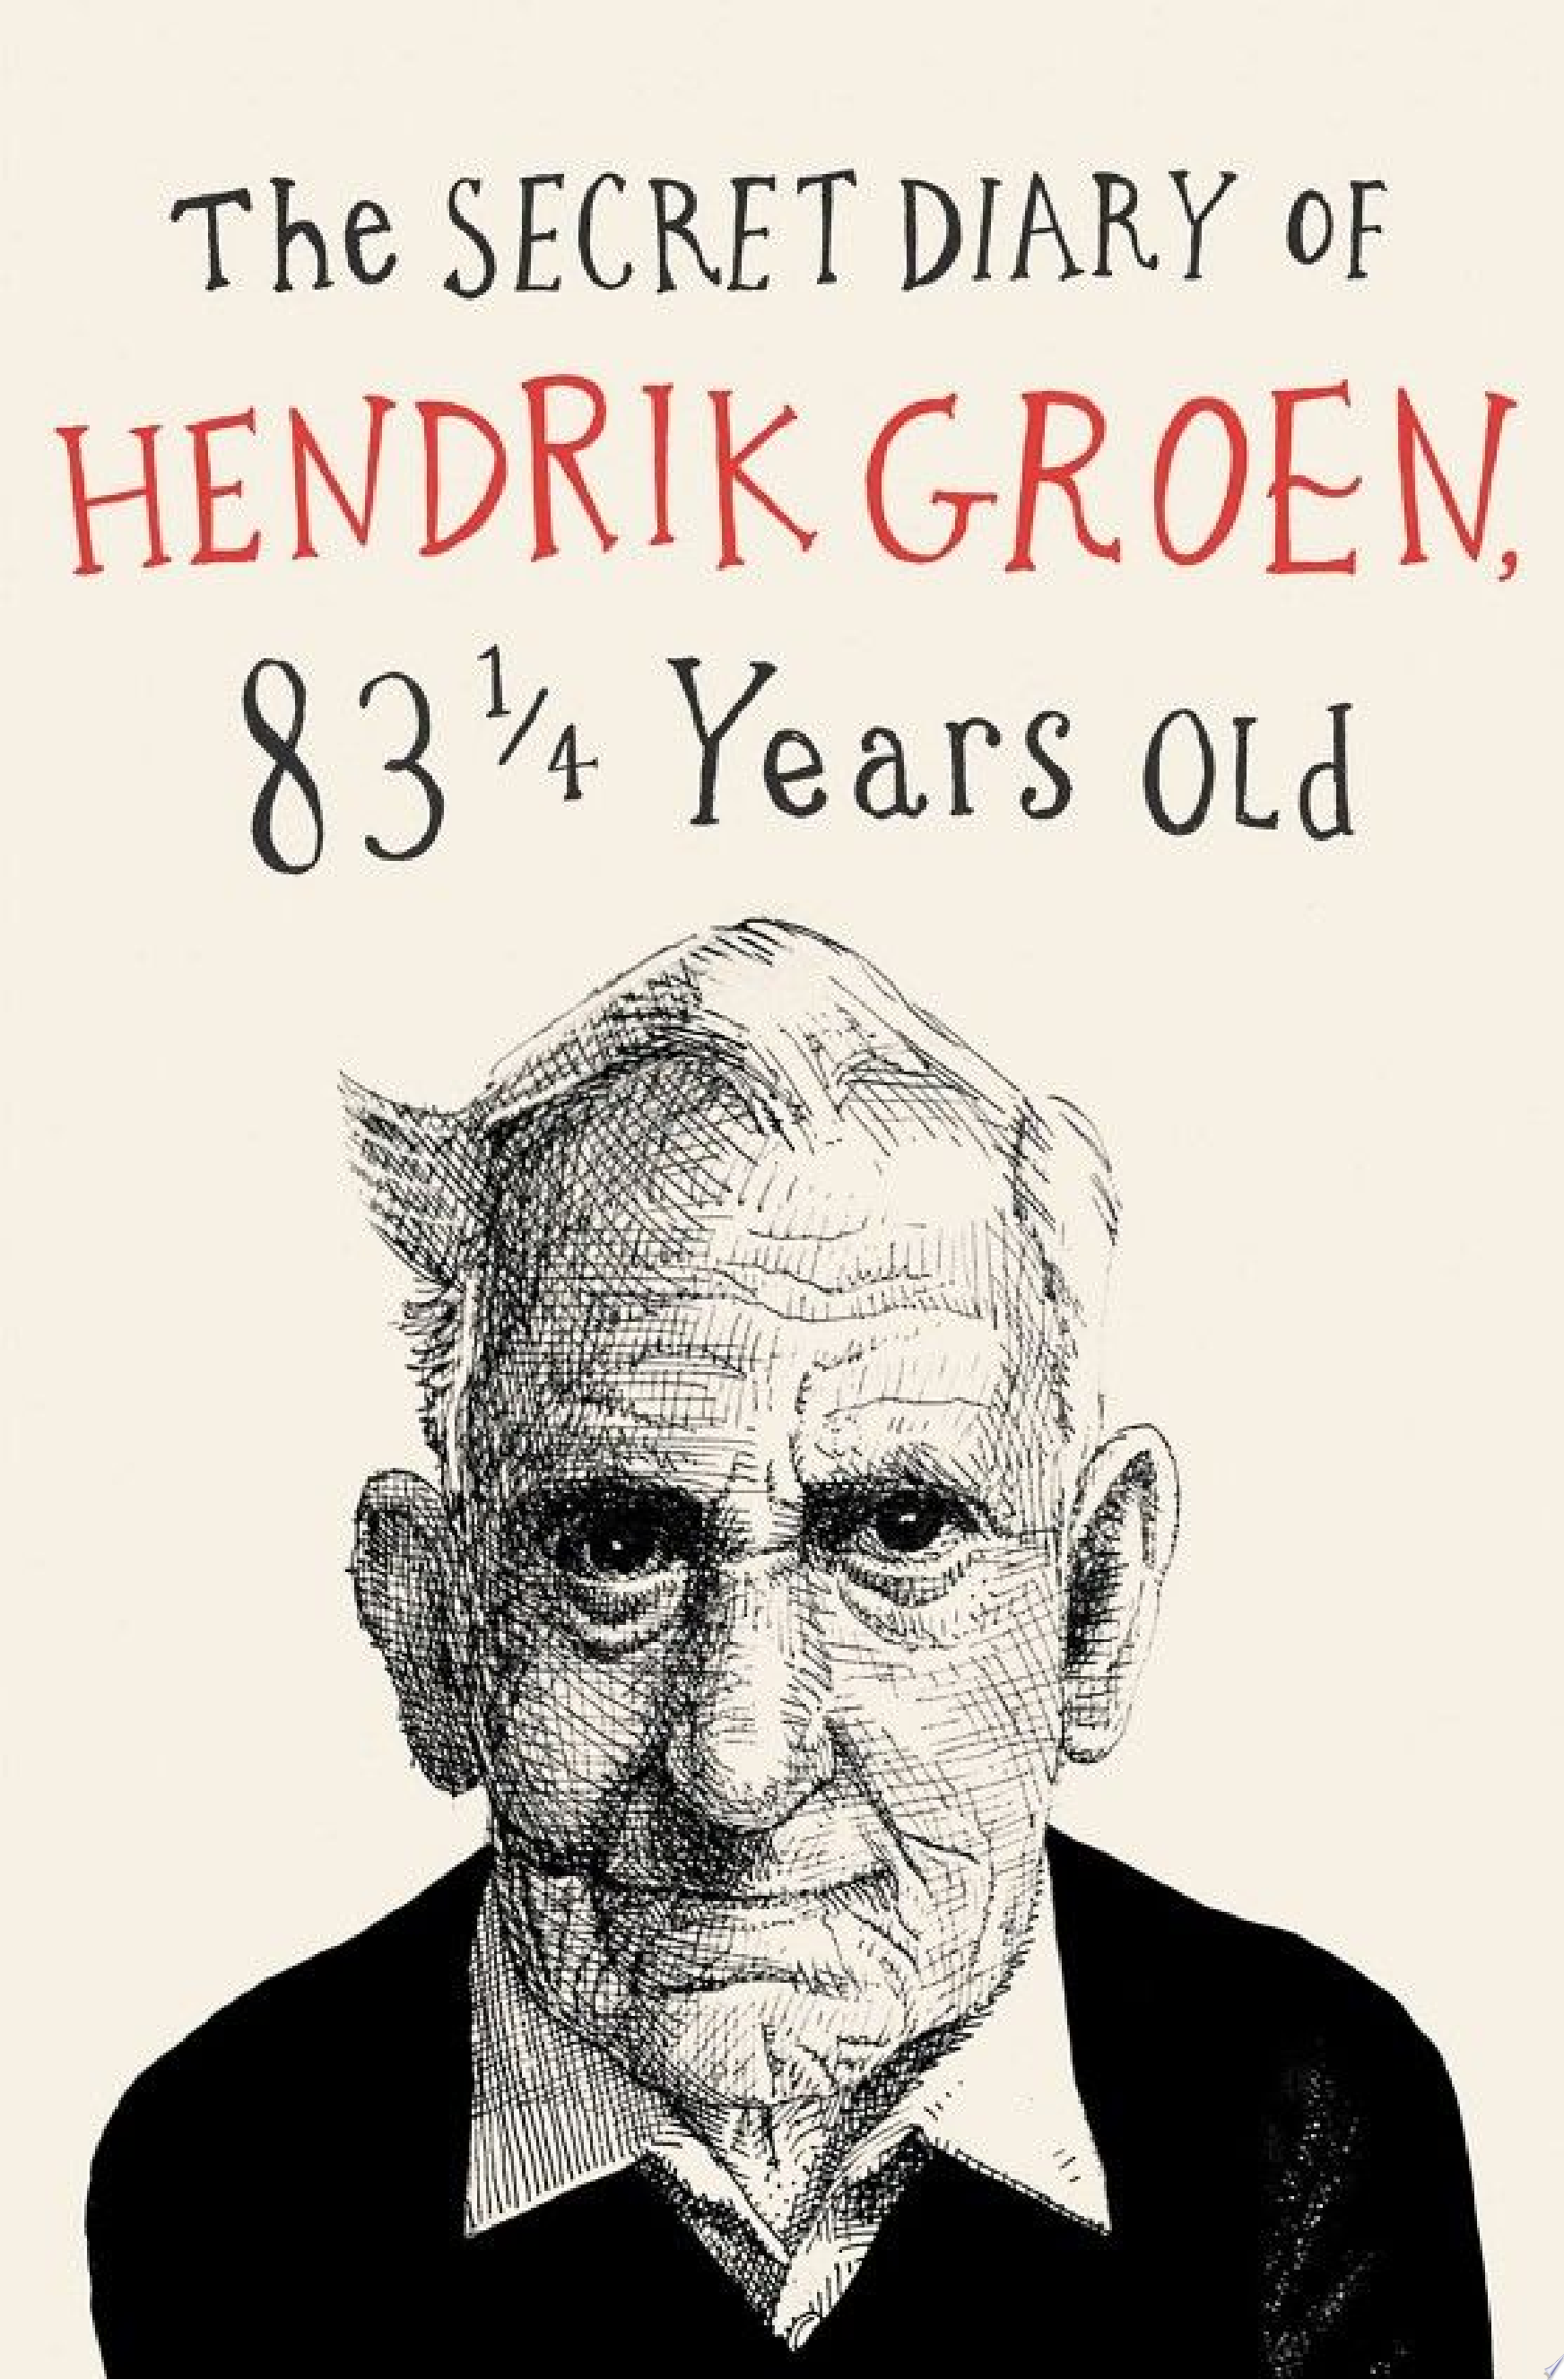 Image for "The Secret Diary of Hendrik Groen"